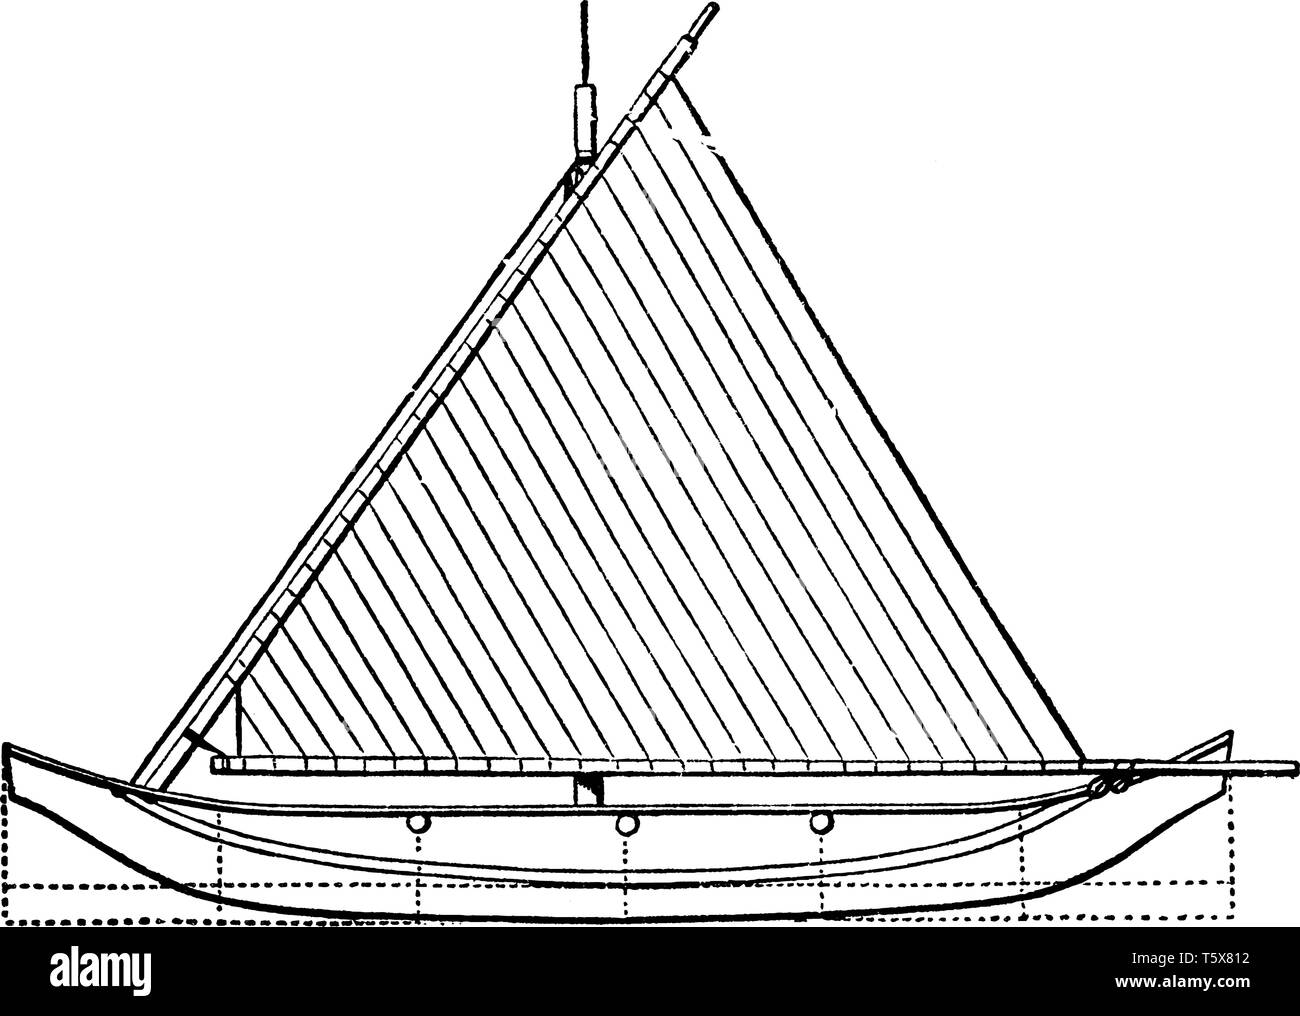 Vista in pianta di Proa è un tipo di imbarcazione a vela con scafi multipli, vintage disegno della linea di incisione o illustrazione. Illustrazione Vettoriale